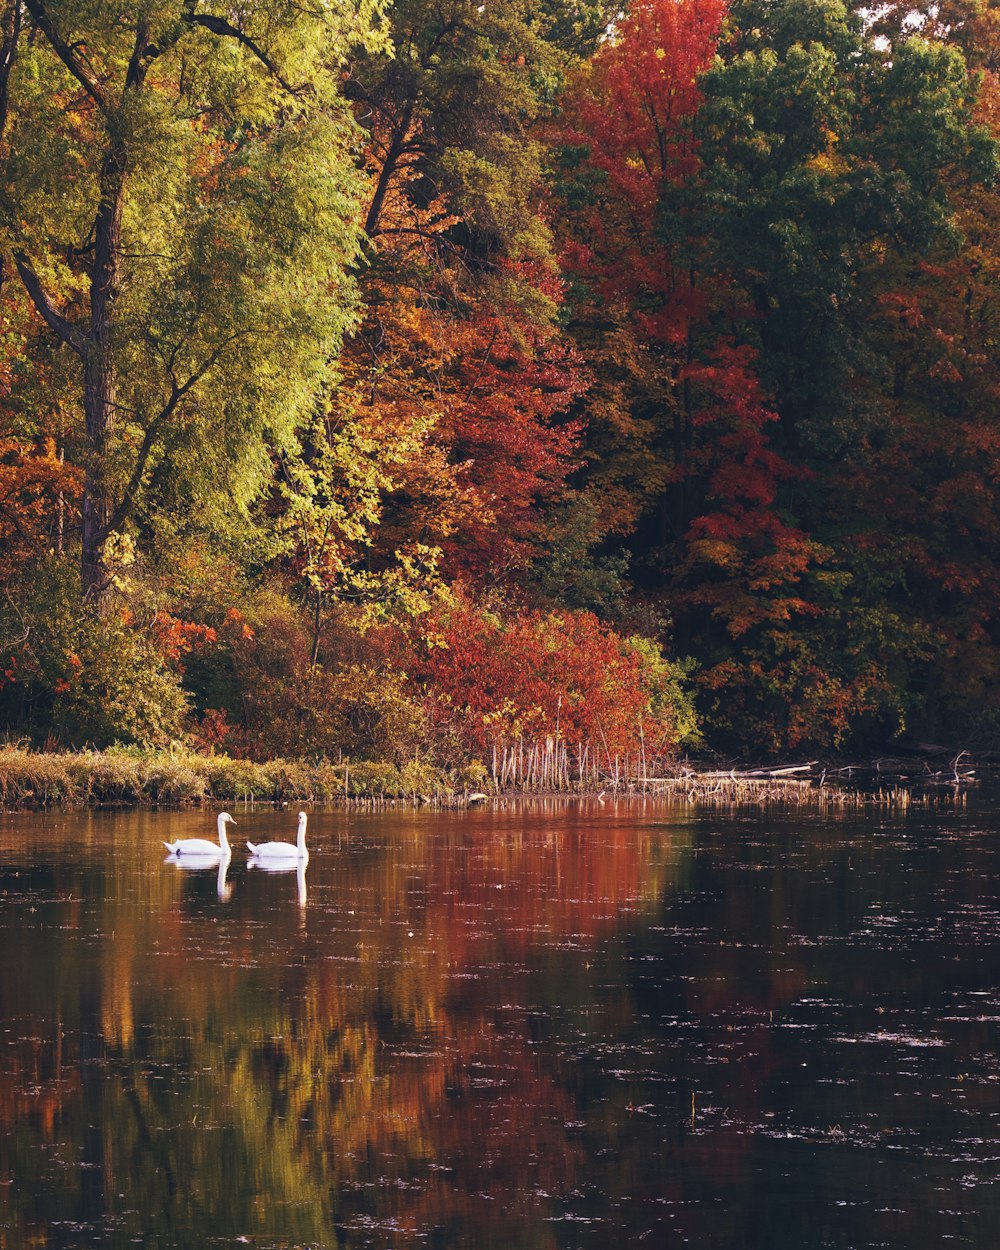 Cisne blanco en el lago rodeado de árboles durante el día